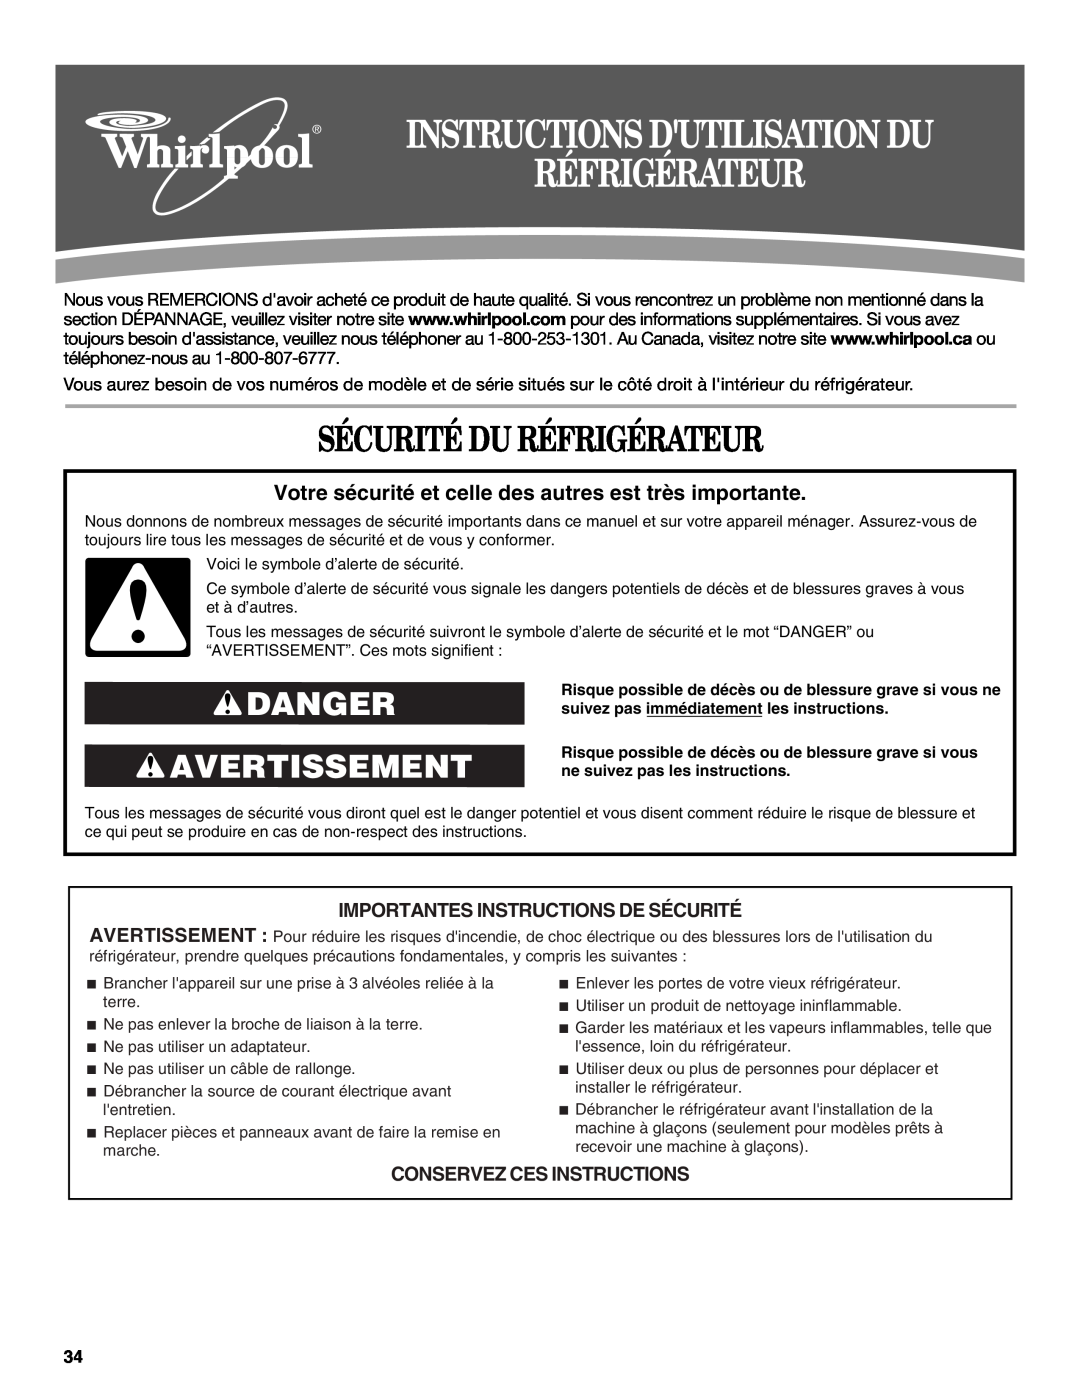 Whirlpool GR2FHTXV installation instructions Sécurité Du Réfrigérateur, Danger Avertissement, Instructions Dutilisation Du 